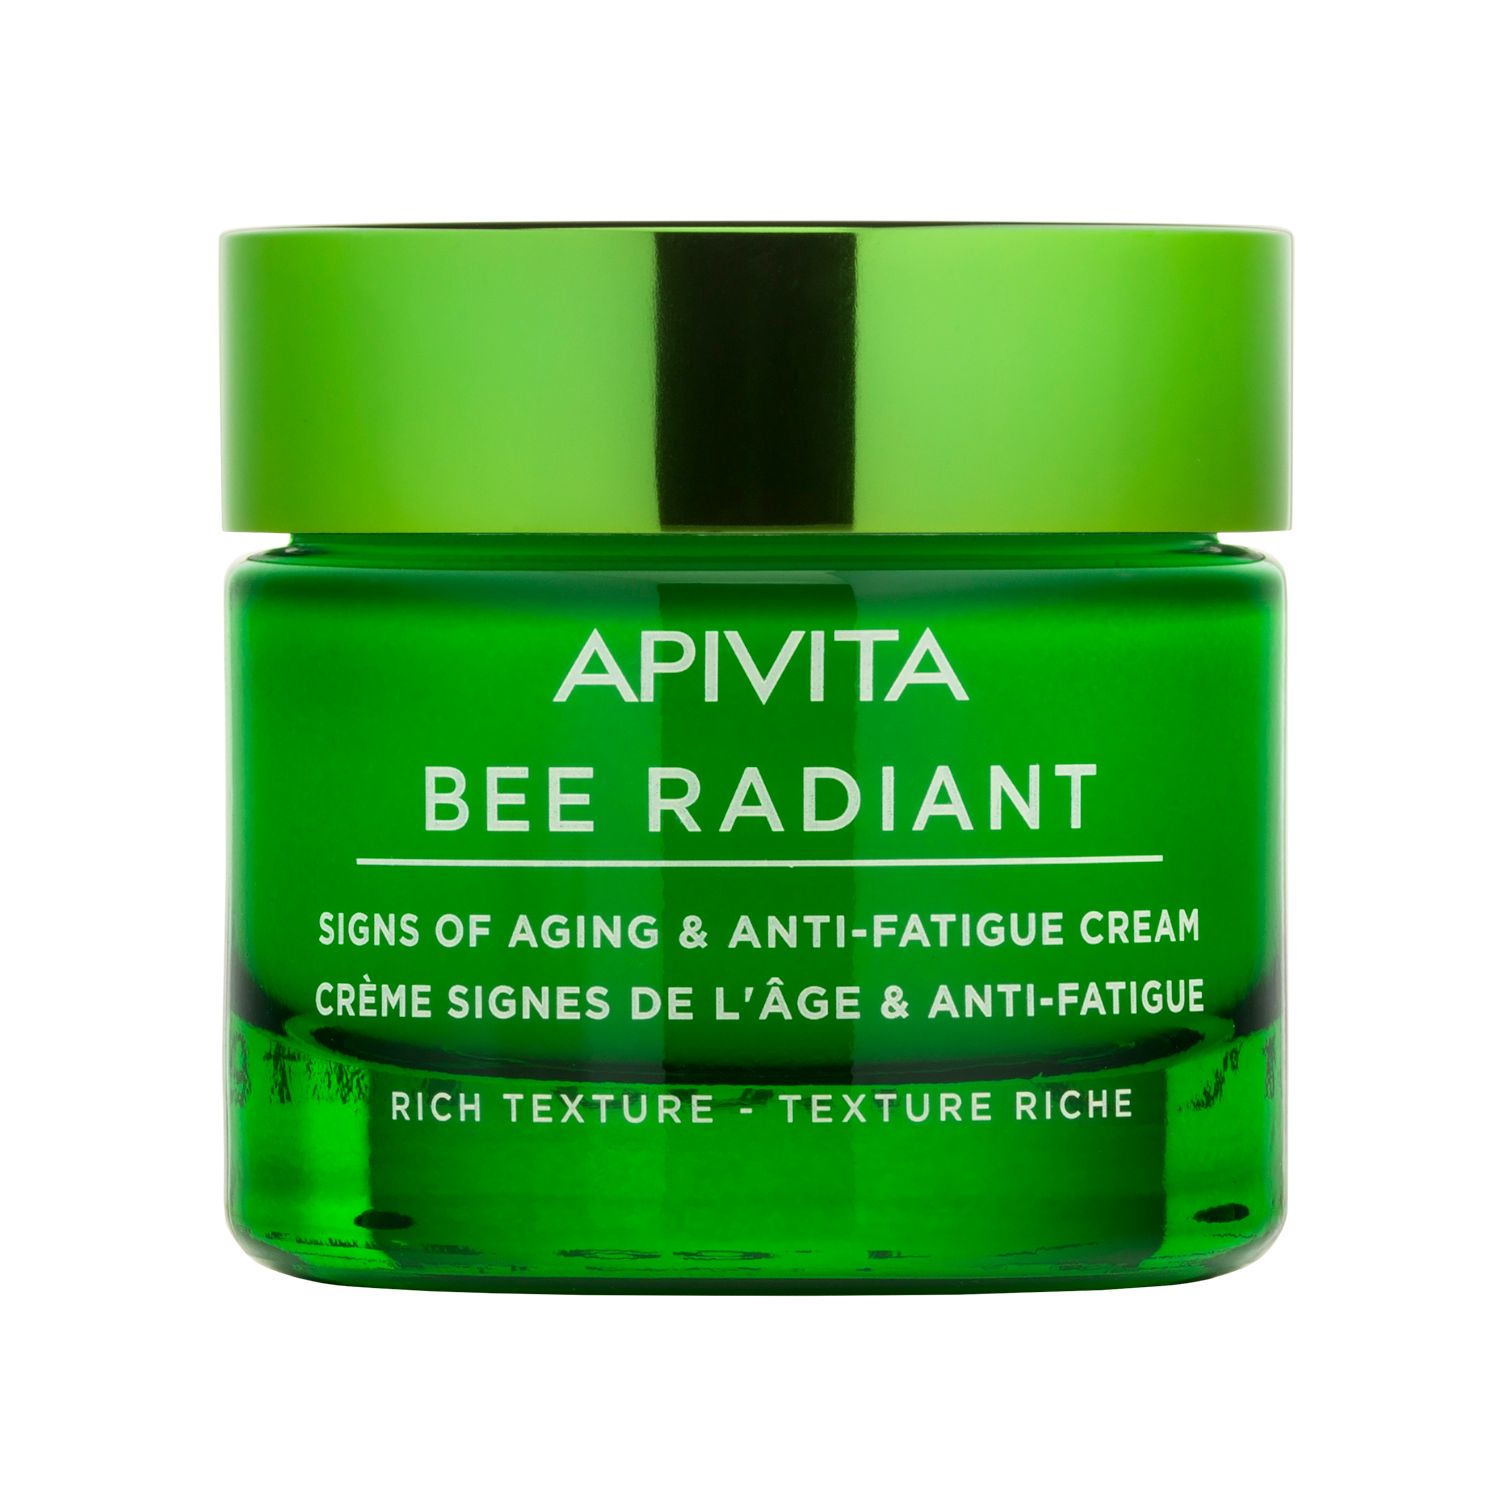 APIVITA Bee Radiant Crema Segni dell'età e Anti-Fatica - Texture Ricca